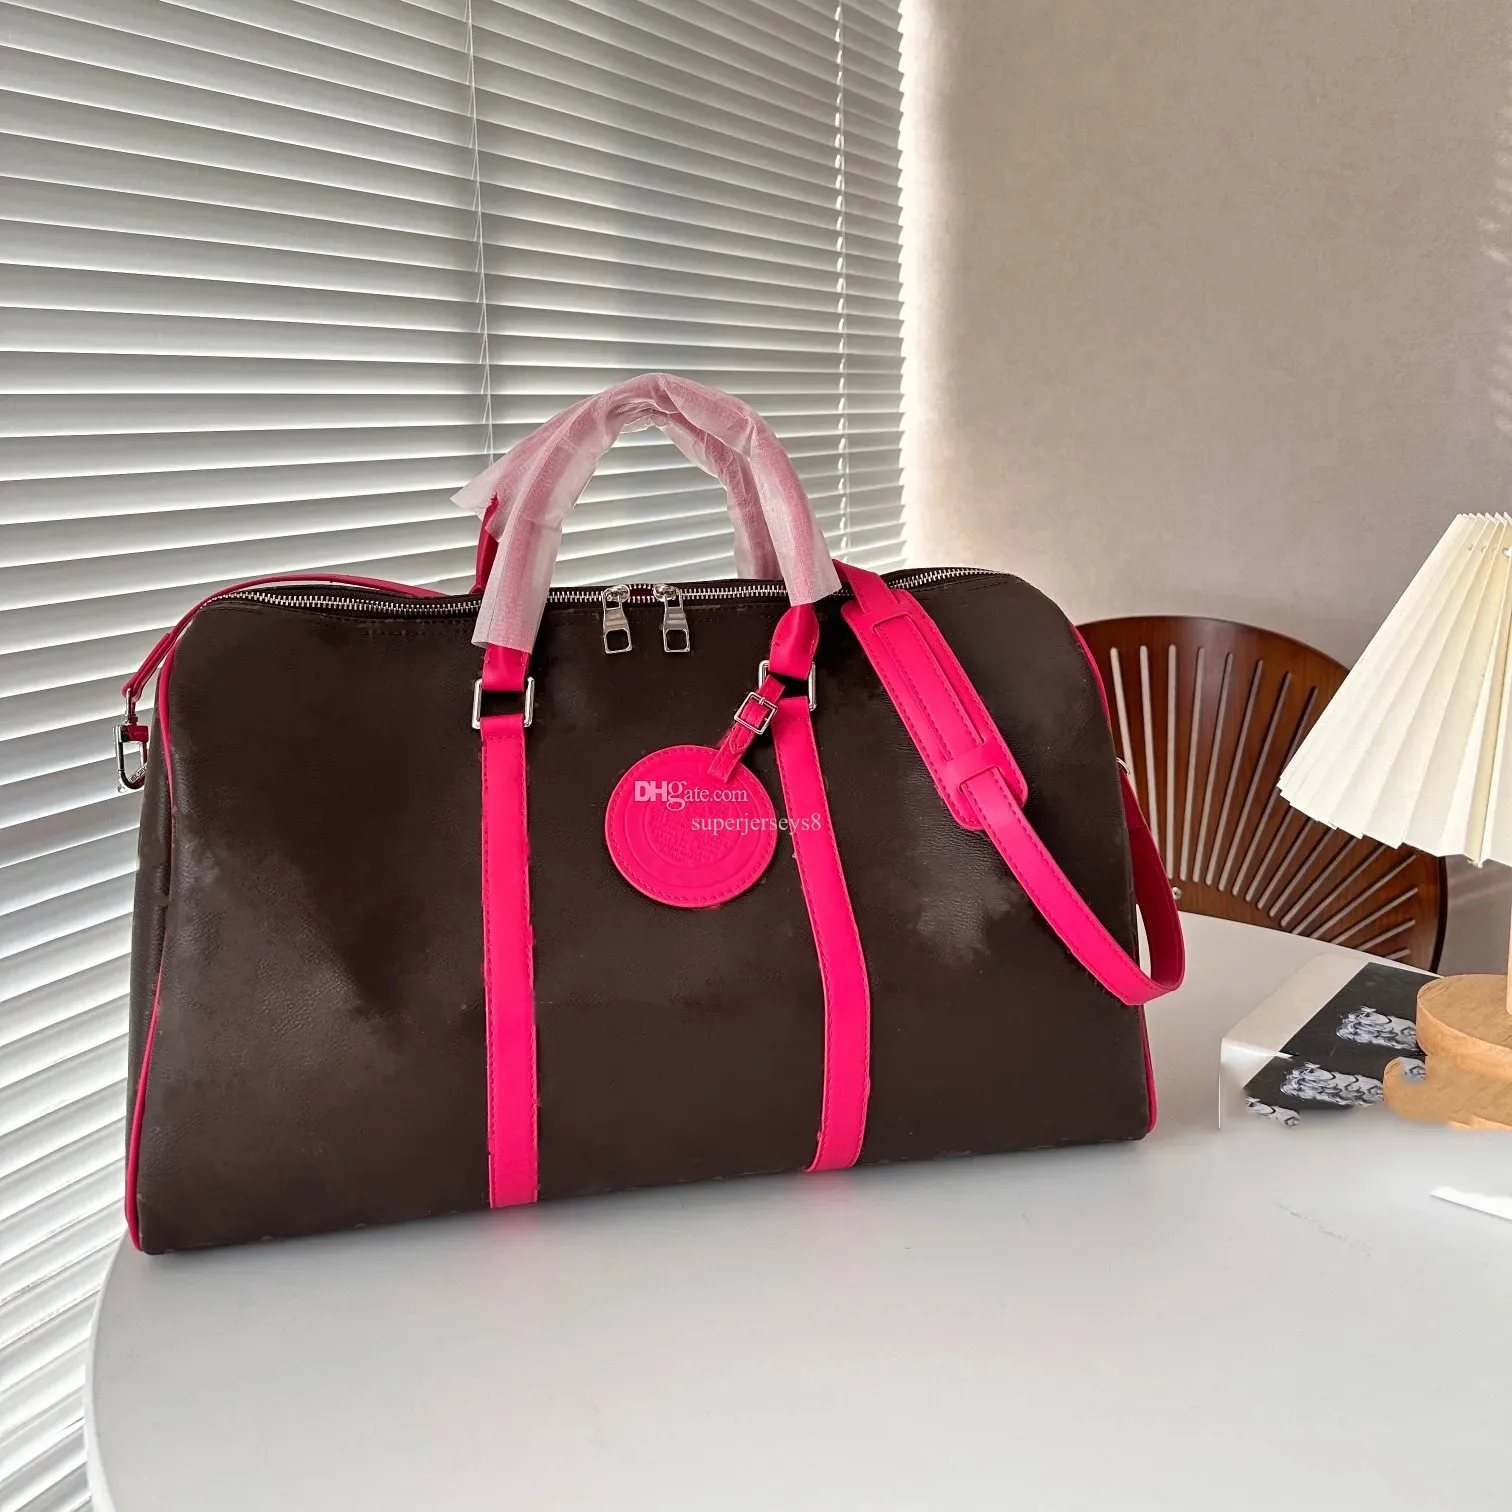 Lüks çantalar kadınlar duffel çanta renkli kahverengi çanta çanta kotları omuz çantaları bagaj kılıfları havaalanı seyahat çantası erkek spor çantası fitness çantaları çapraz bavul